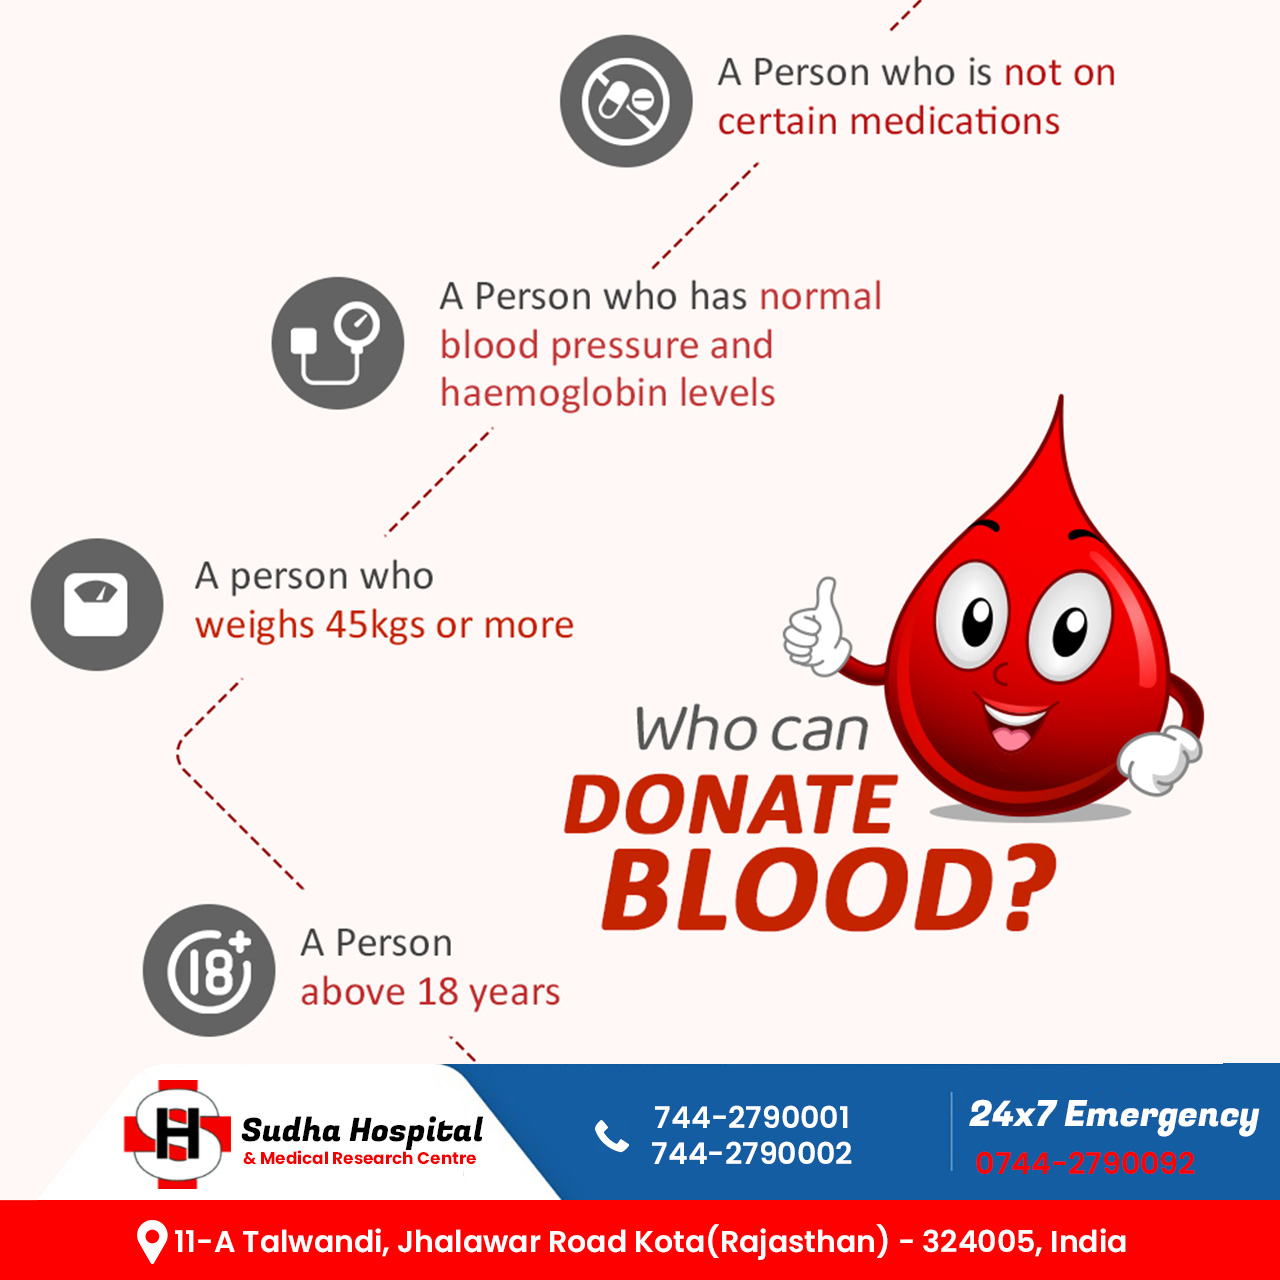 Blood Bank in Kota